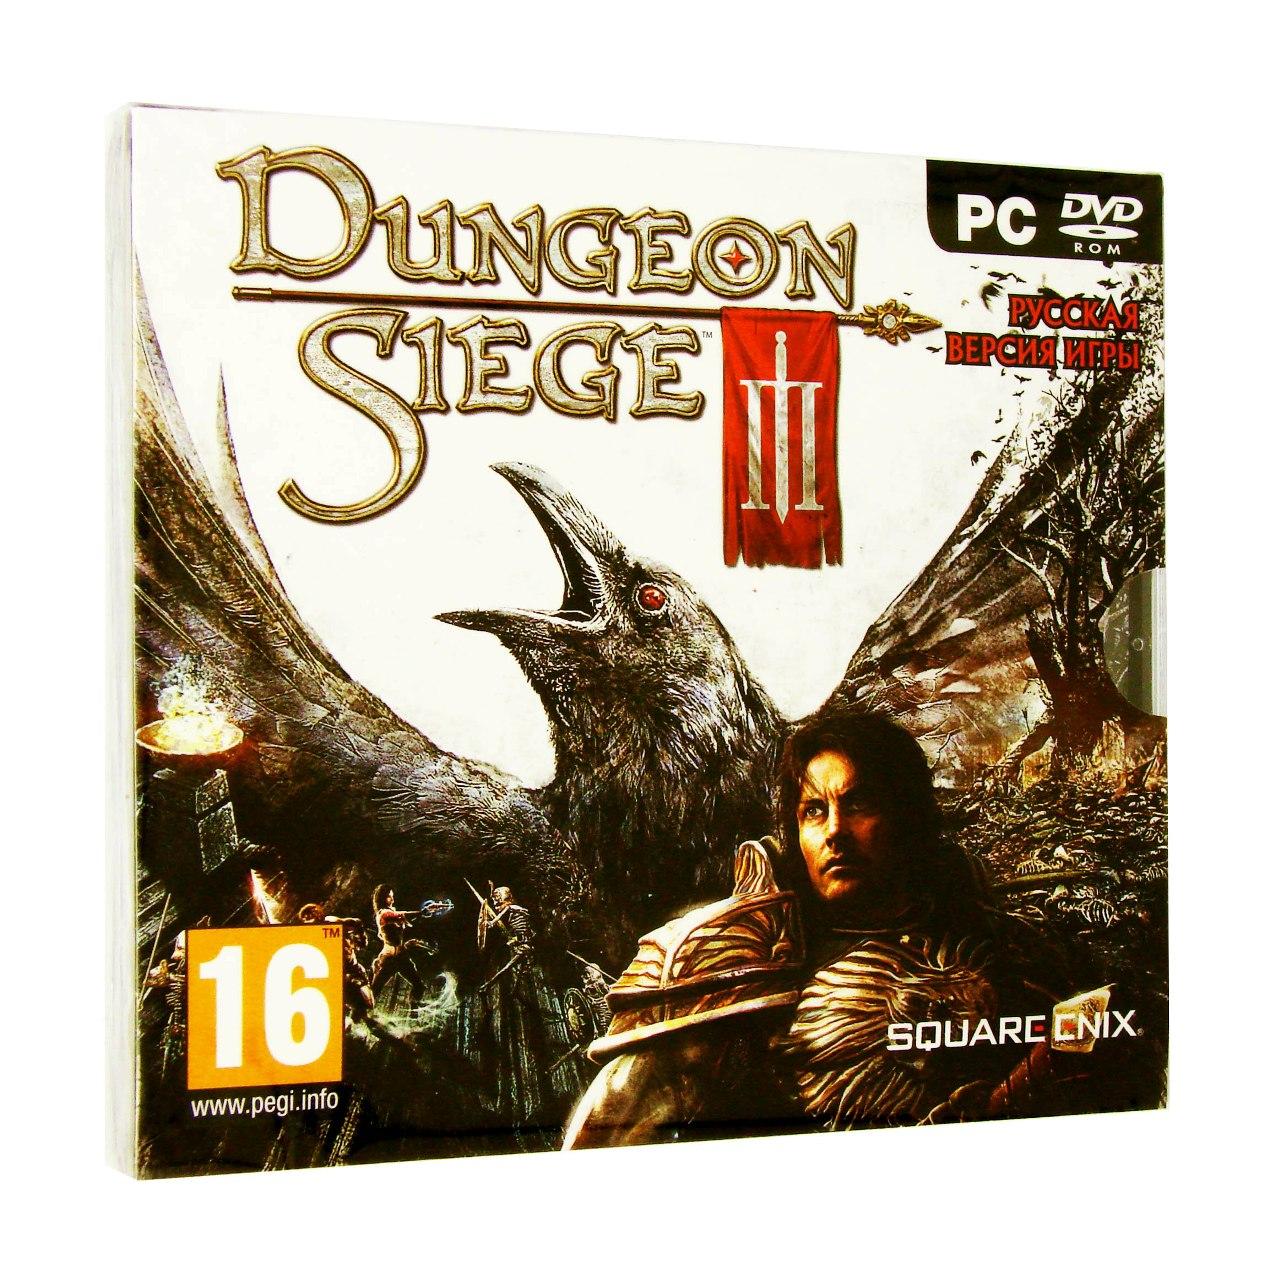 Компьютерный компакт-диск Dungeon Siege 3 (PC), фирма "Новый Диск, DVD